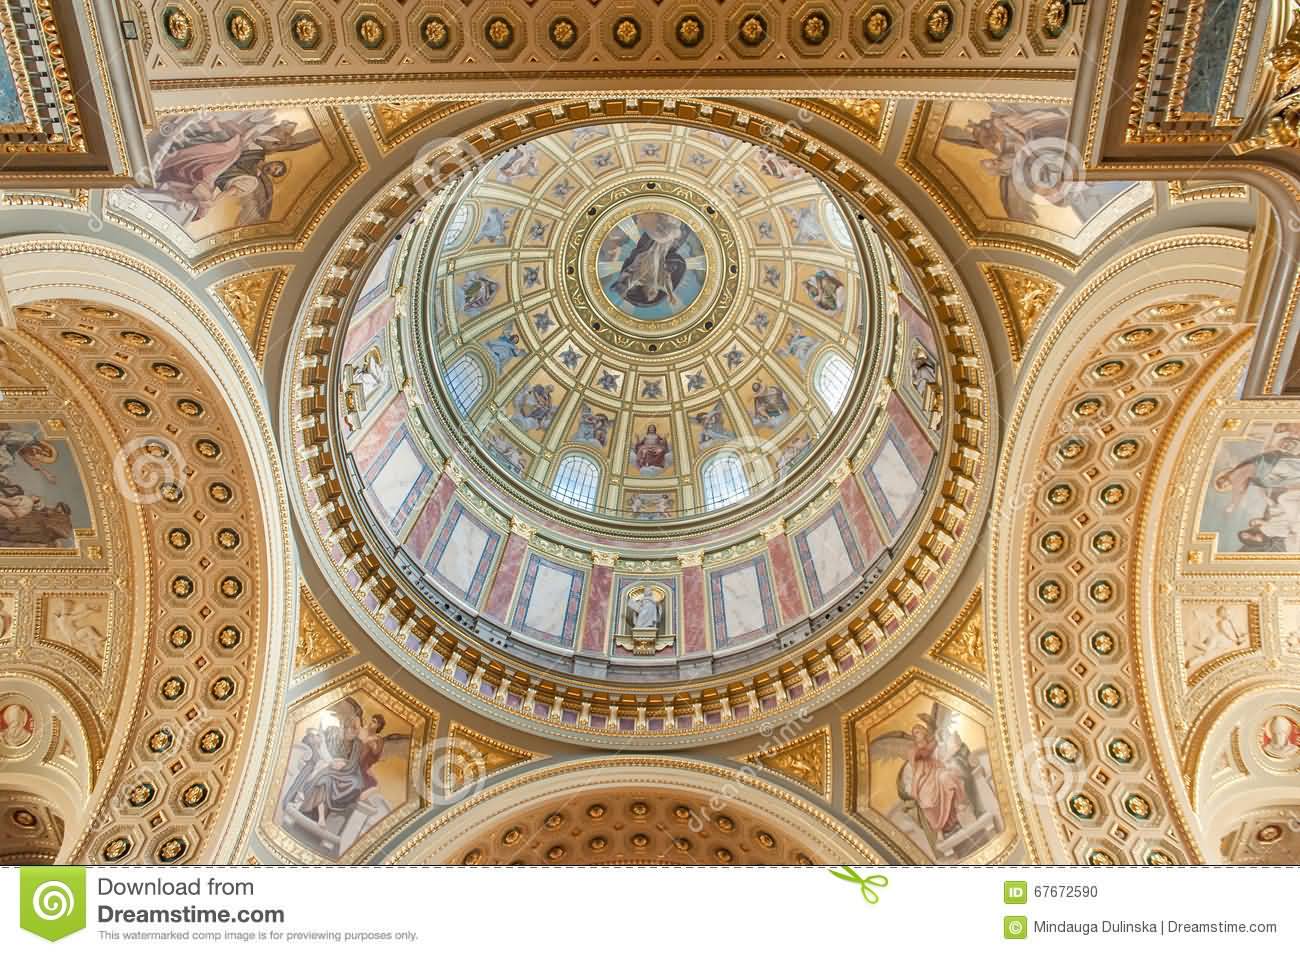 Ceiling Details Inside St. Stephen's Basilica